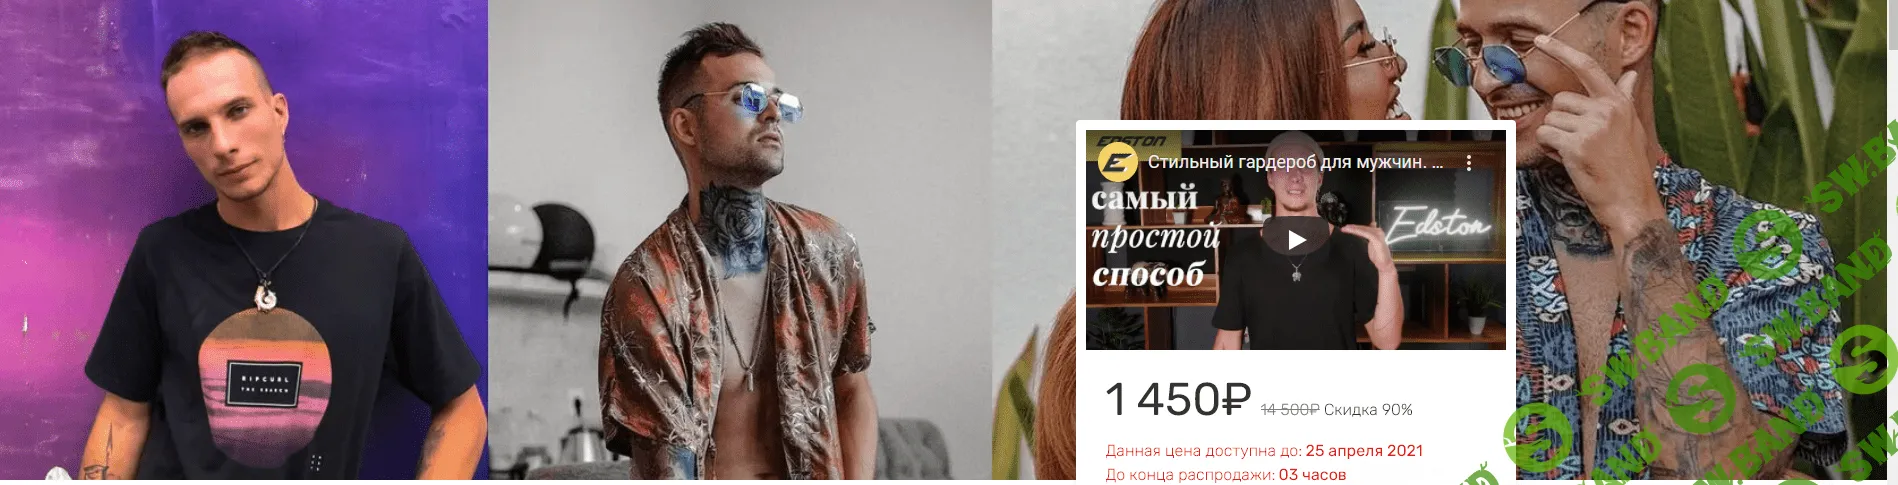 [Никита Небесный, Ваня Абсент] Стильный гардероб для мужчин. Как создать свой индивидуальный имидж (2021)